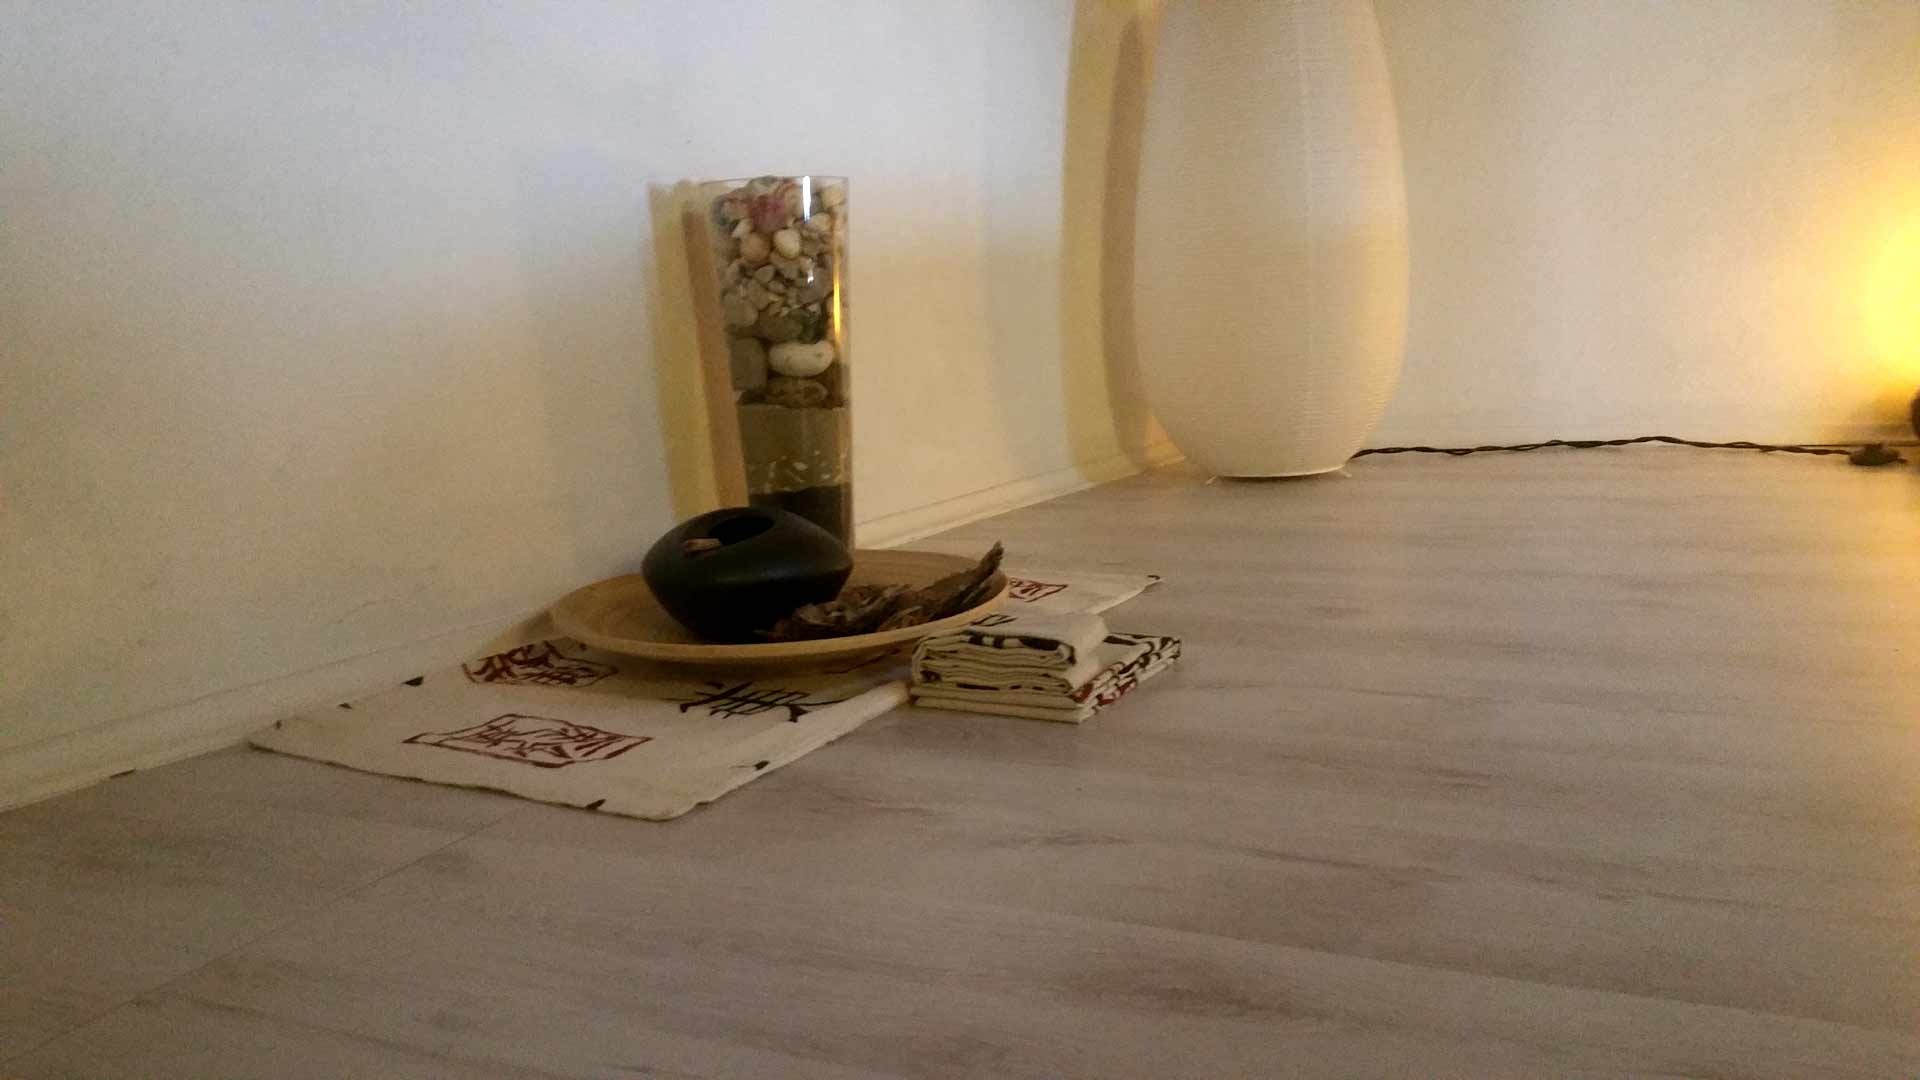 Camera zen composizione stoffa legno sassi acqua B&B & meditation center Zorba il Buddha Passerano Marmorito Asti